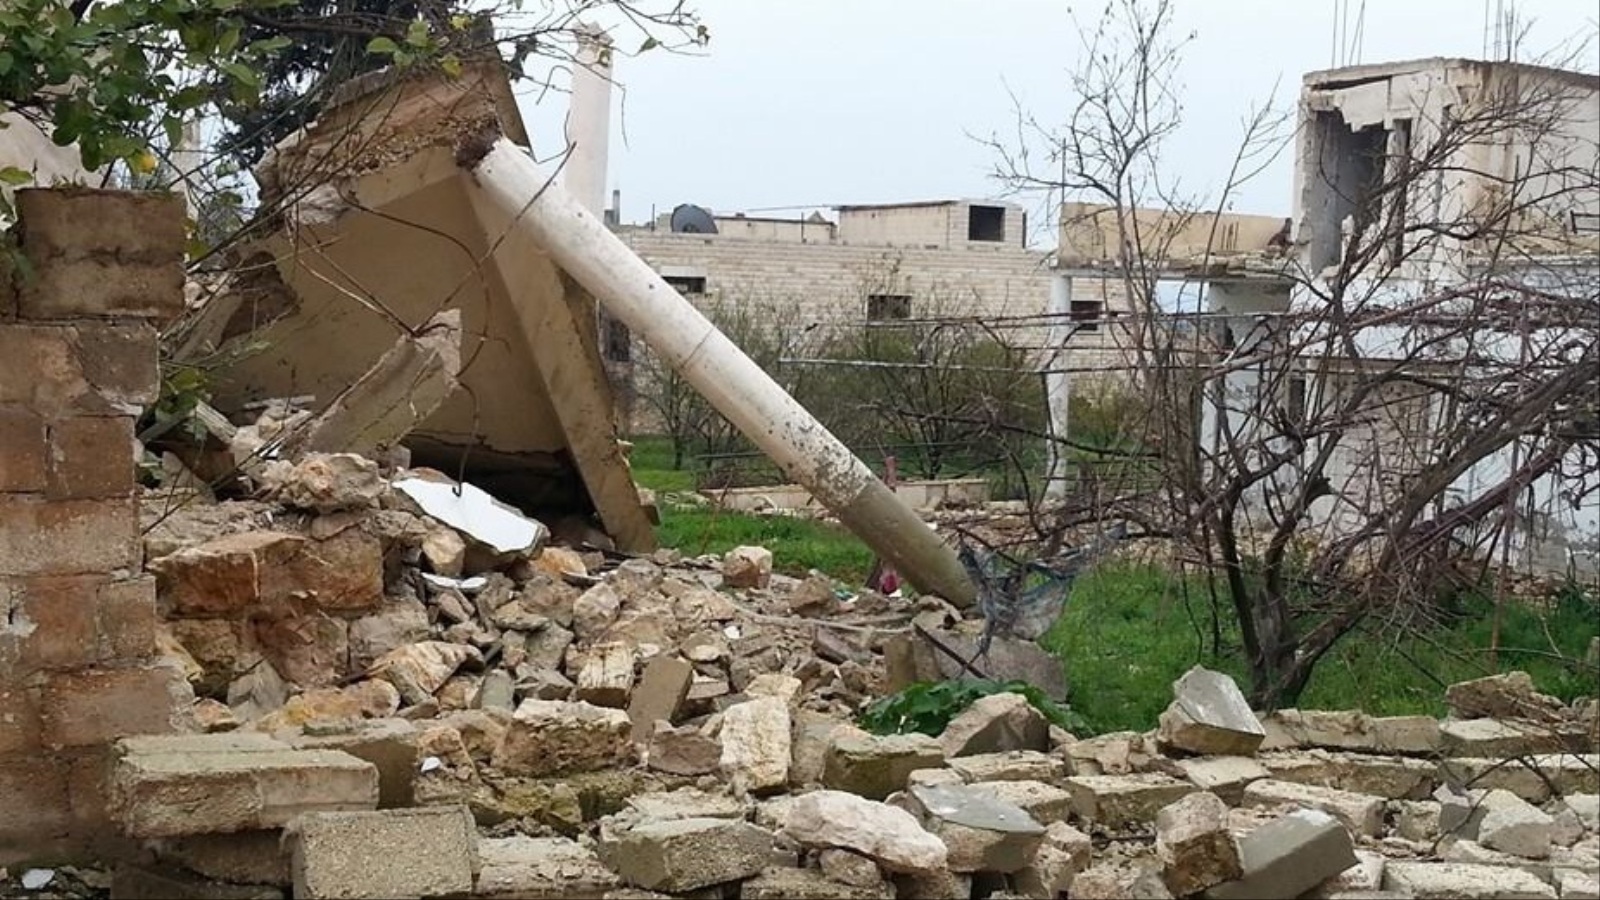 القصف دمر أجزاء كبيرة من منازل كفرزيتا وسمح للبرد باختراقها (الجزيرة)